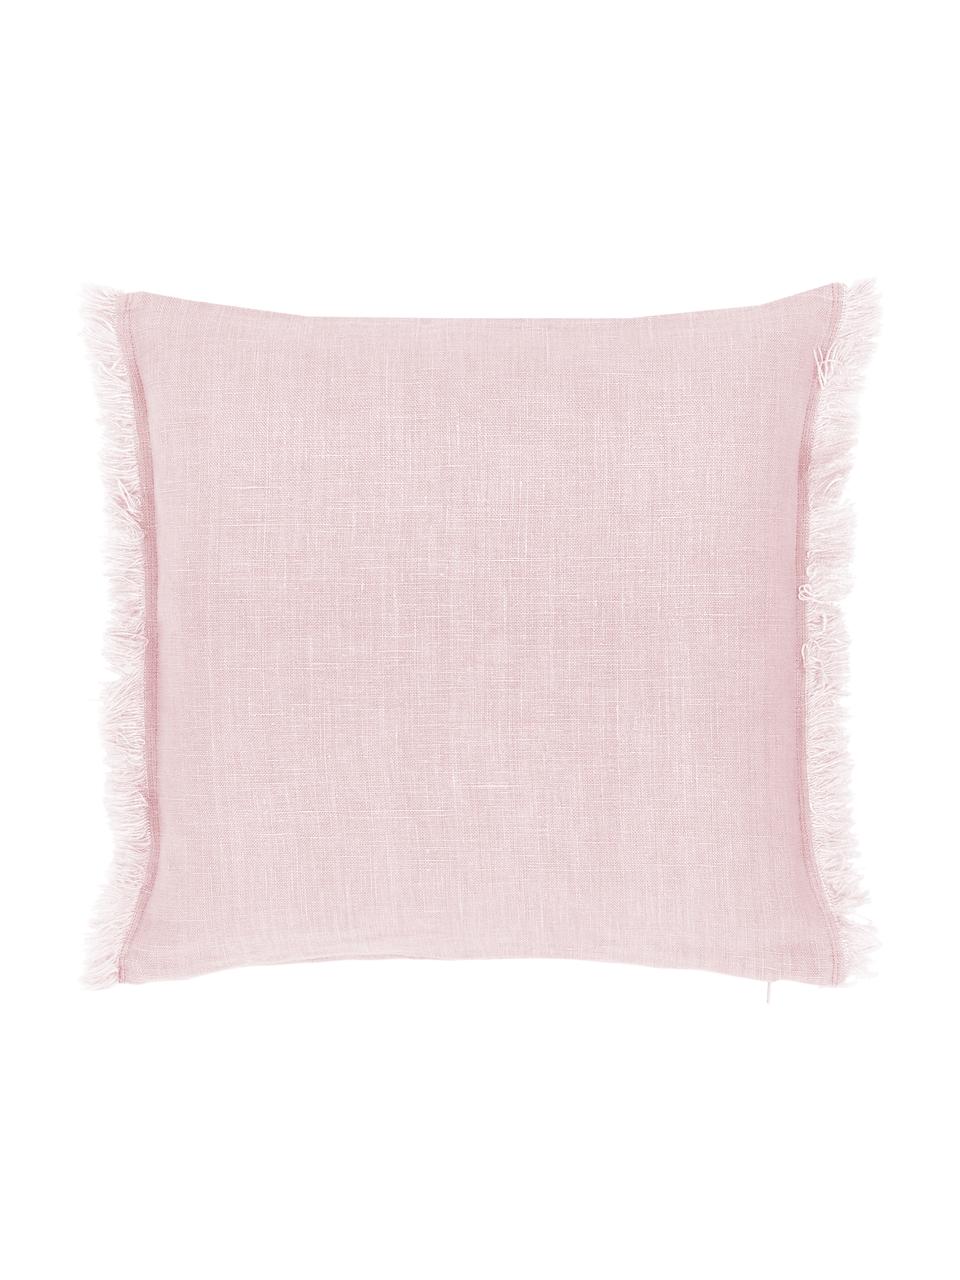 Federa arredo in lino rosa con frange Luana, 100% lino, Rosa cipria, Larg. 50 x Lung. 50 cm